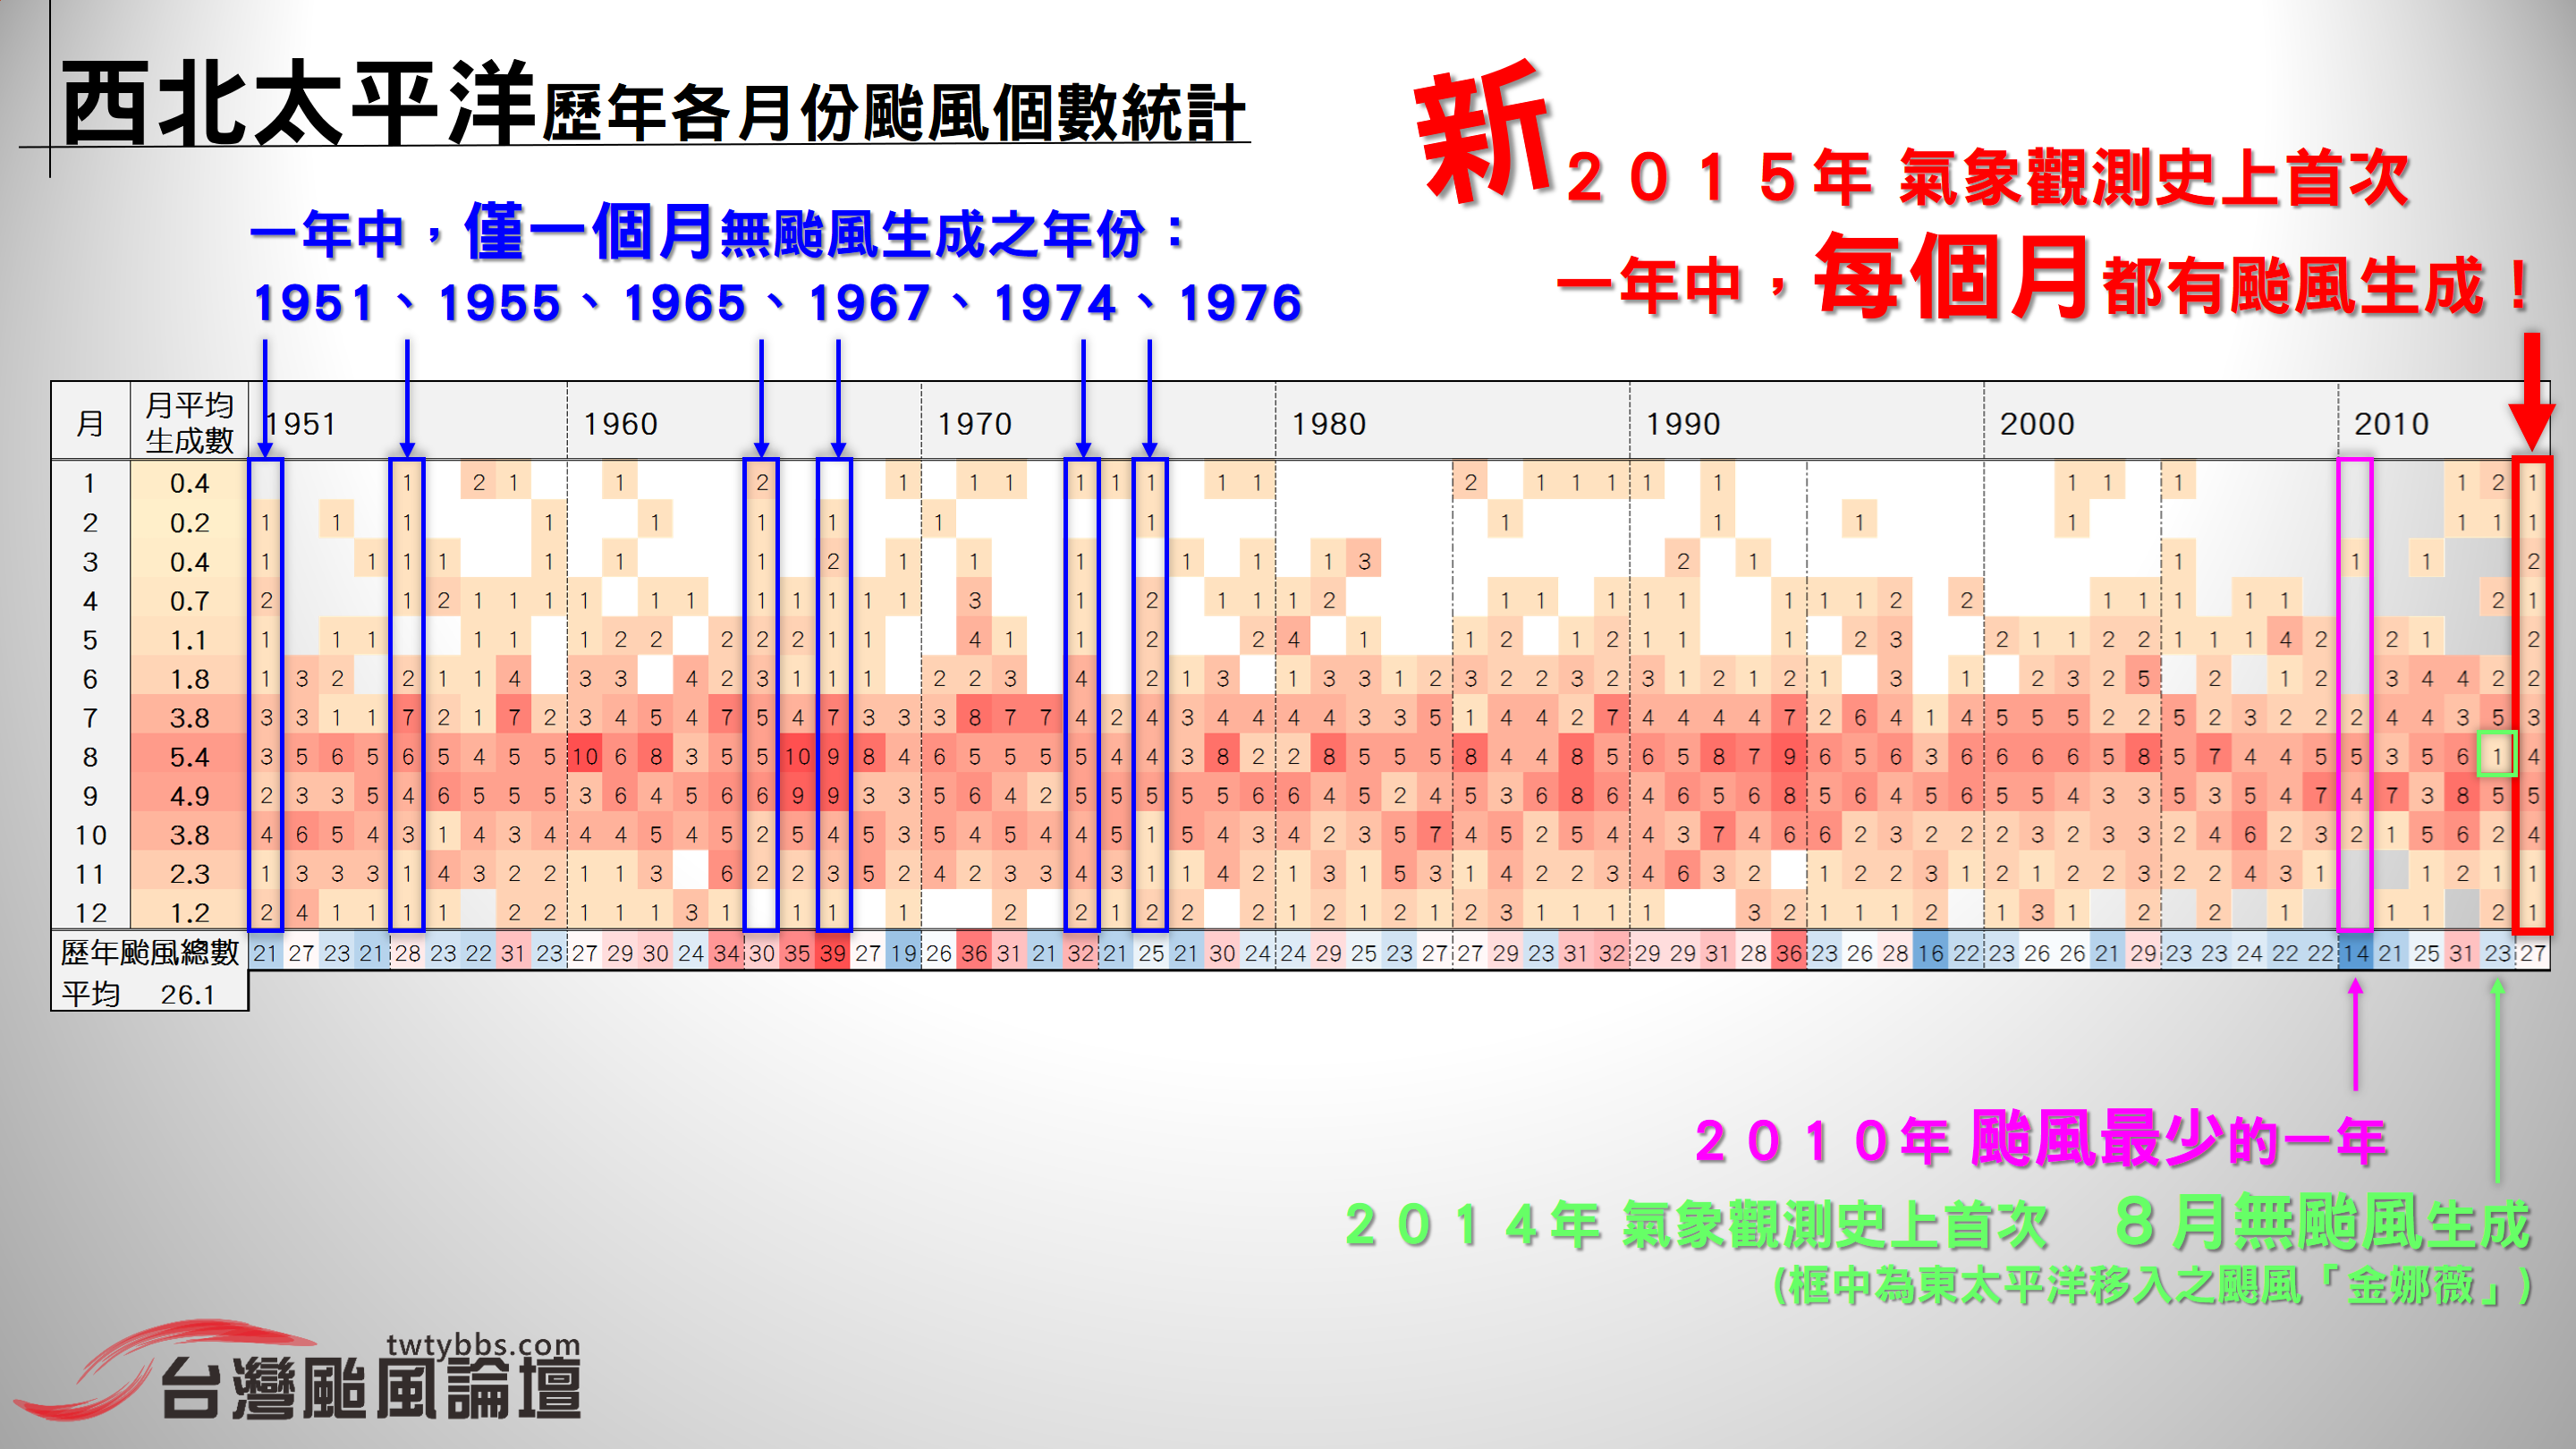 歷年颱風個數統計(月)出圖.png